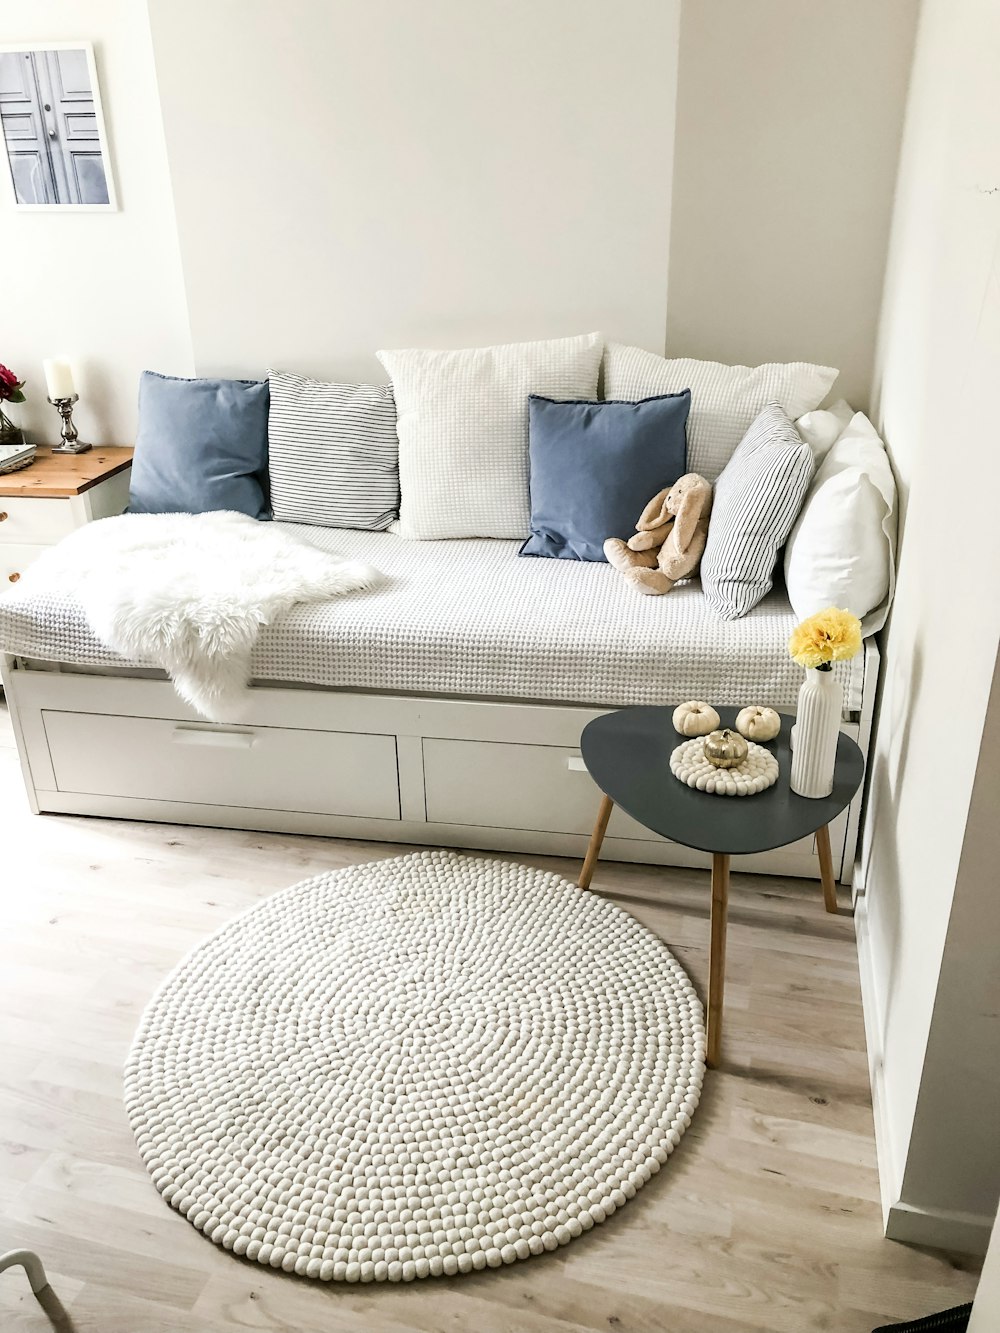 almohadas azules y blancas en un sofá blanco y una alfombra redonda blanca en el suelo